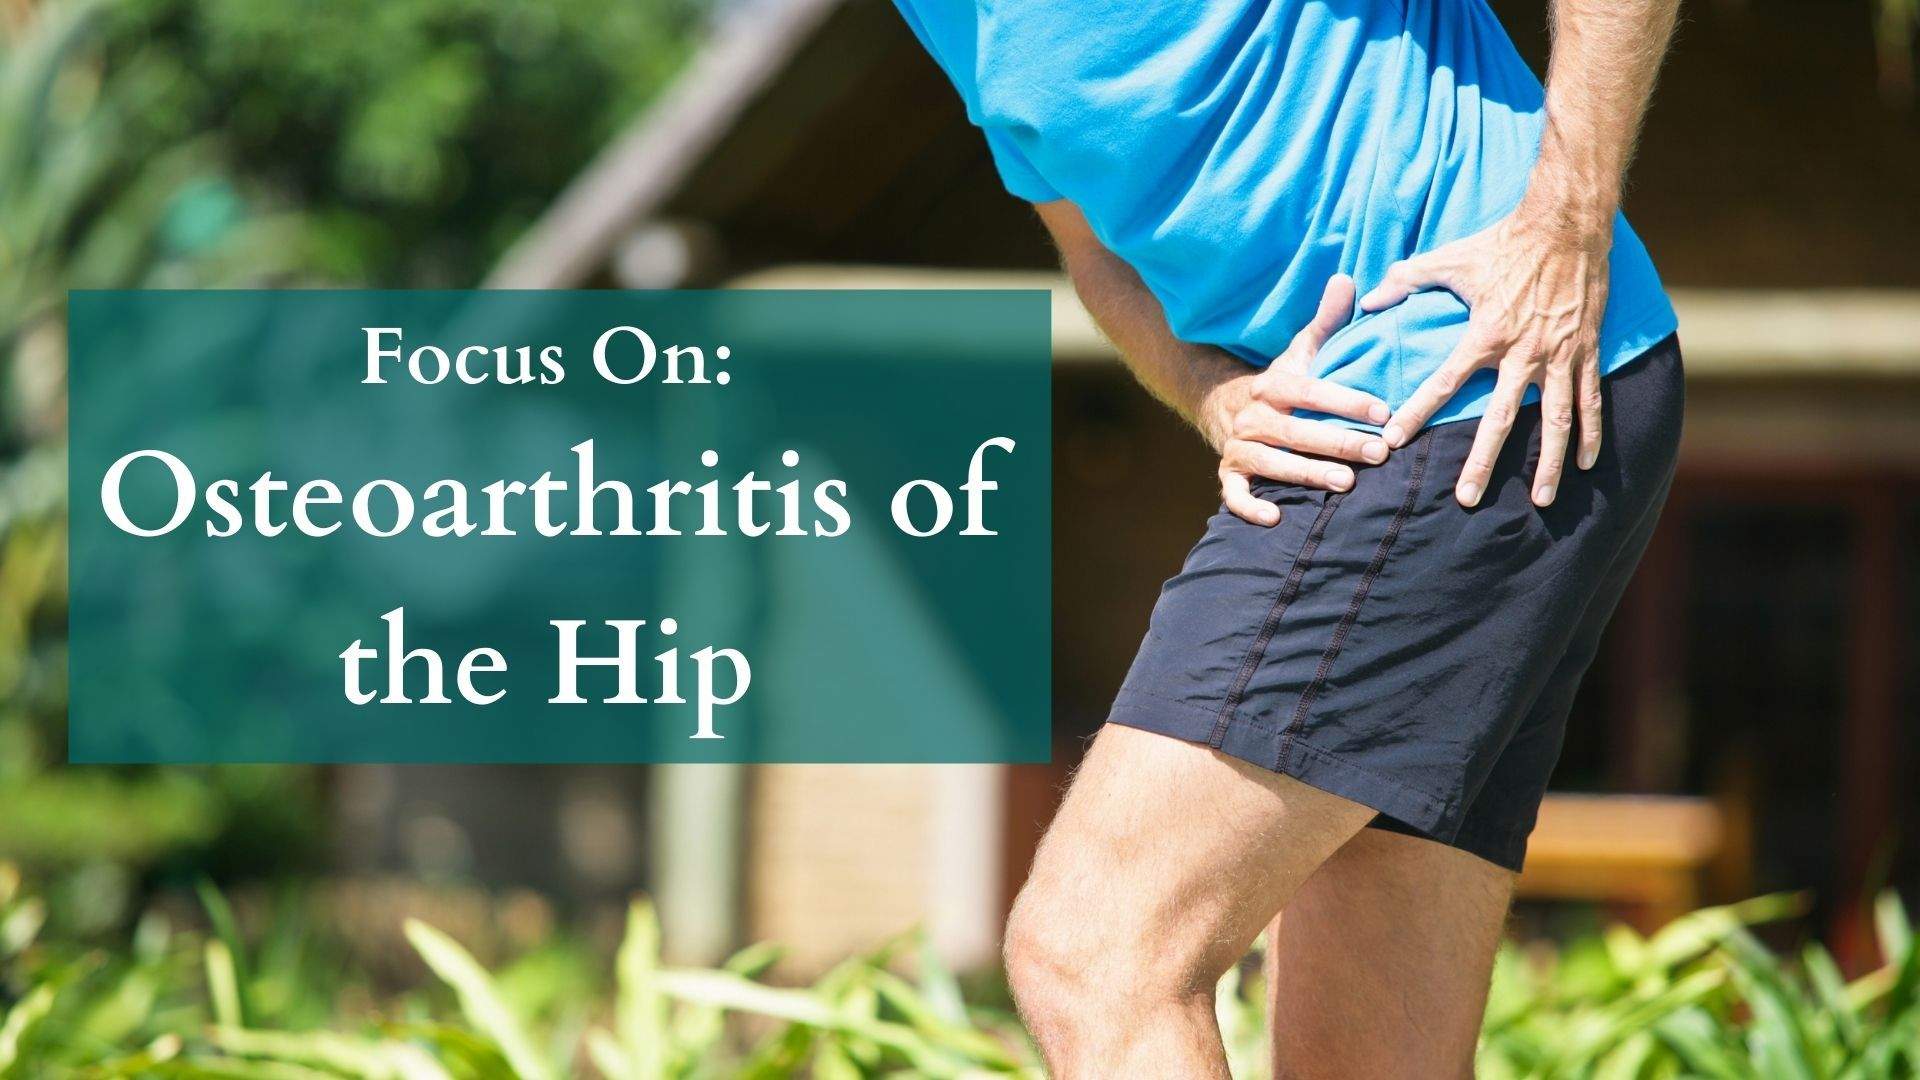 Focus On: Osteoarthritis of the Hip